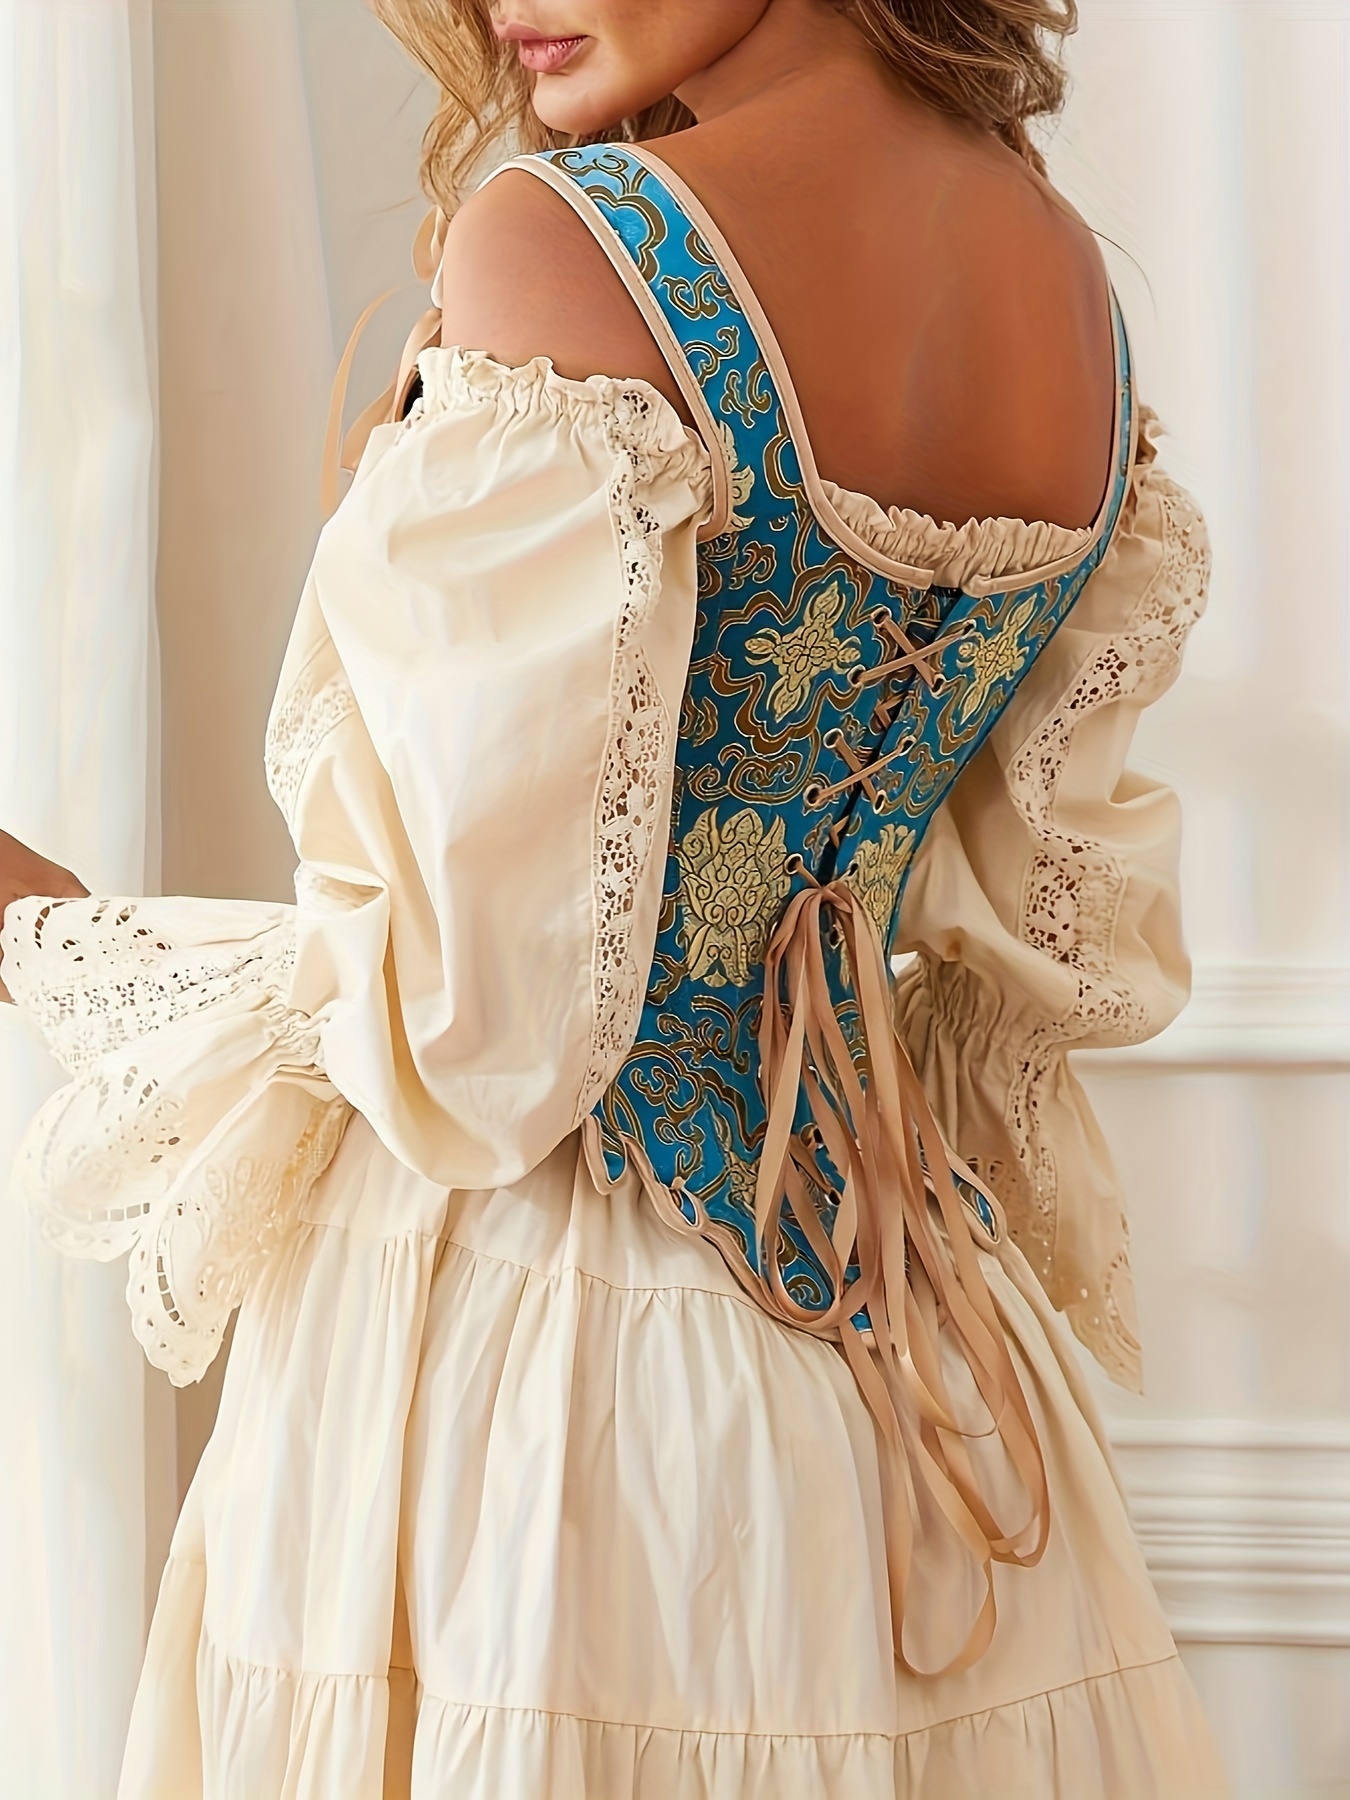 Curea vintage pentru femei, stil gotic steampunk, corsete overbust de tip stays în stilul anilor 1780